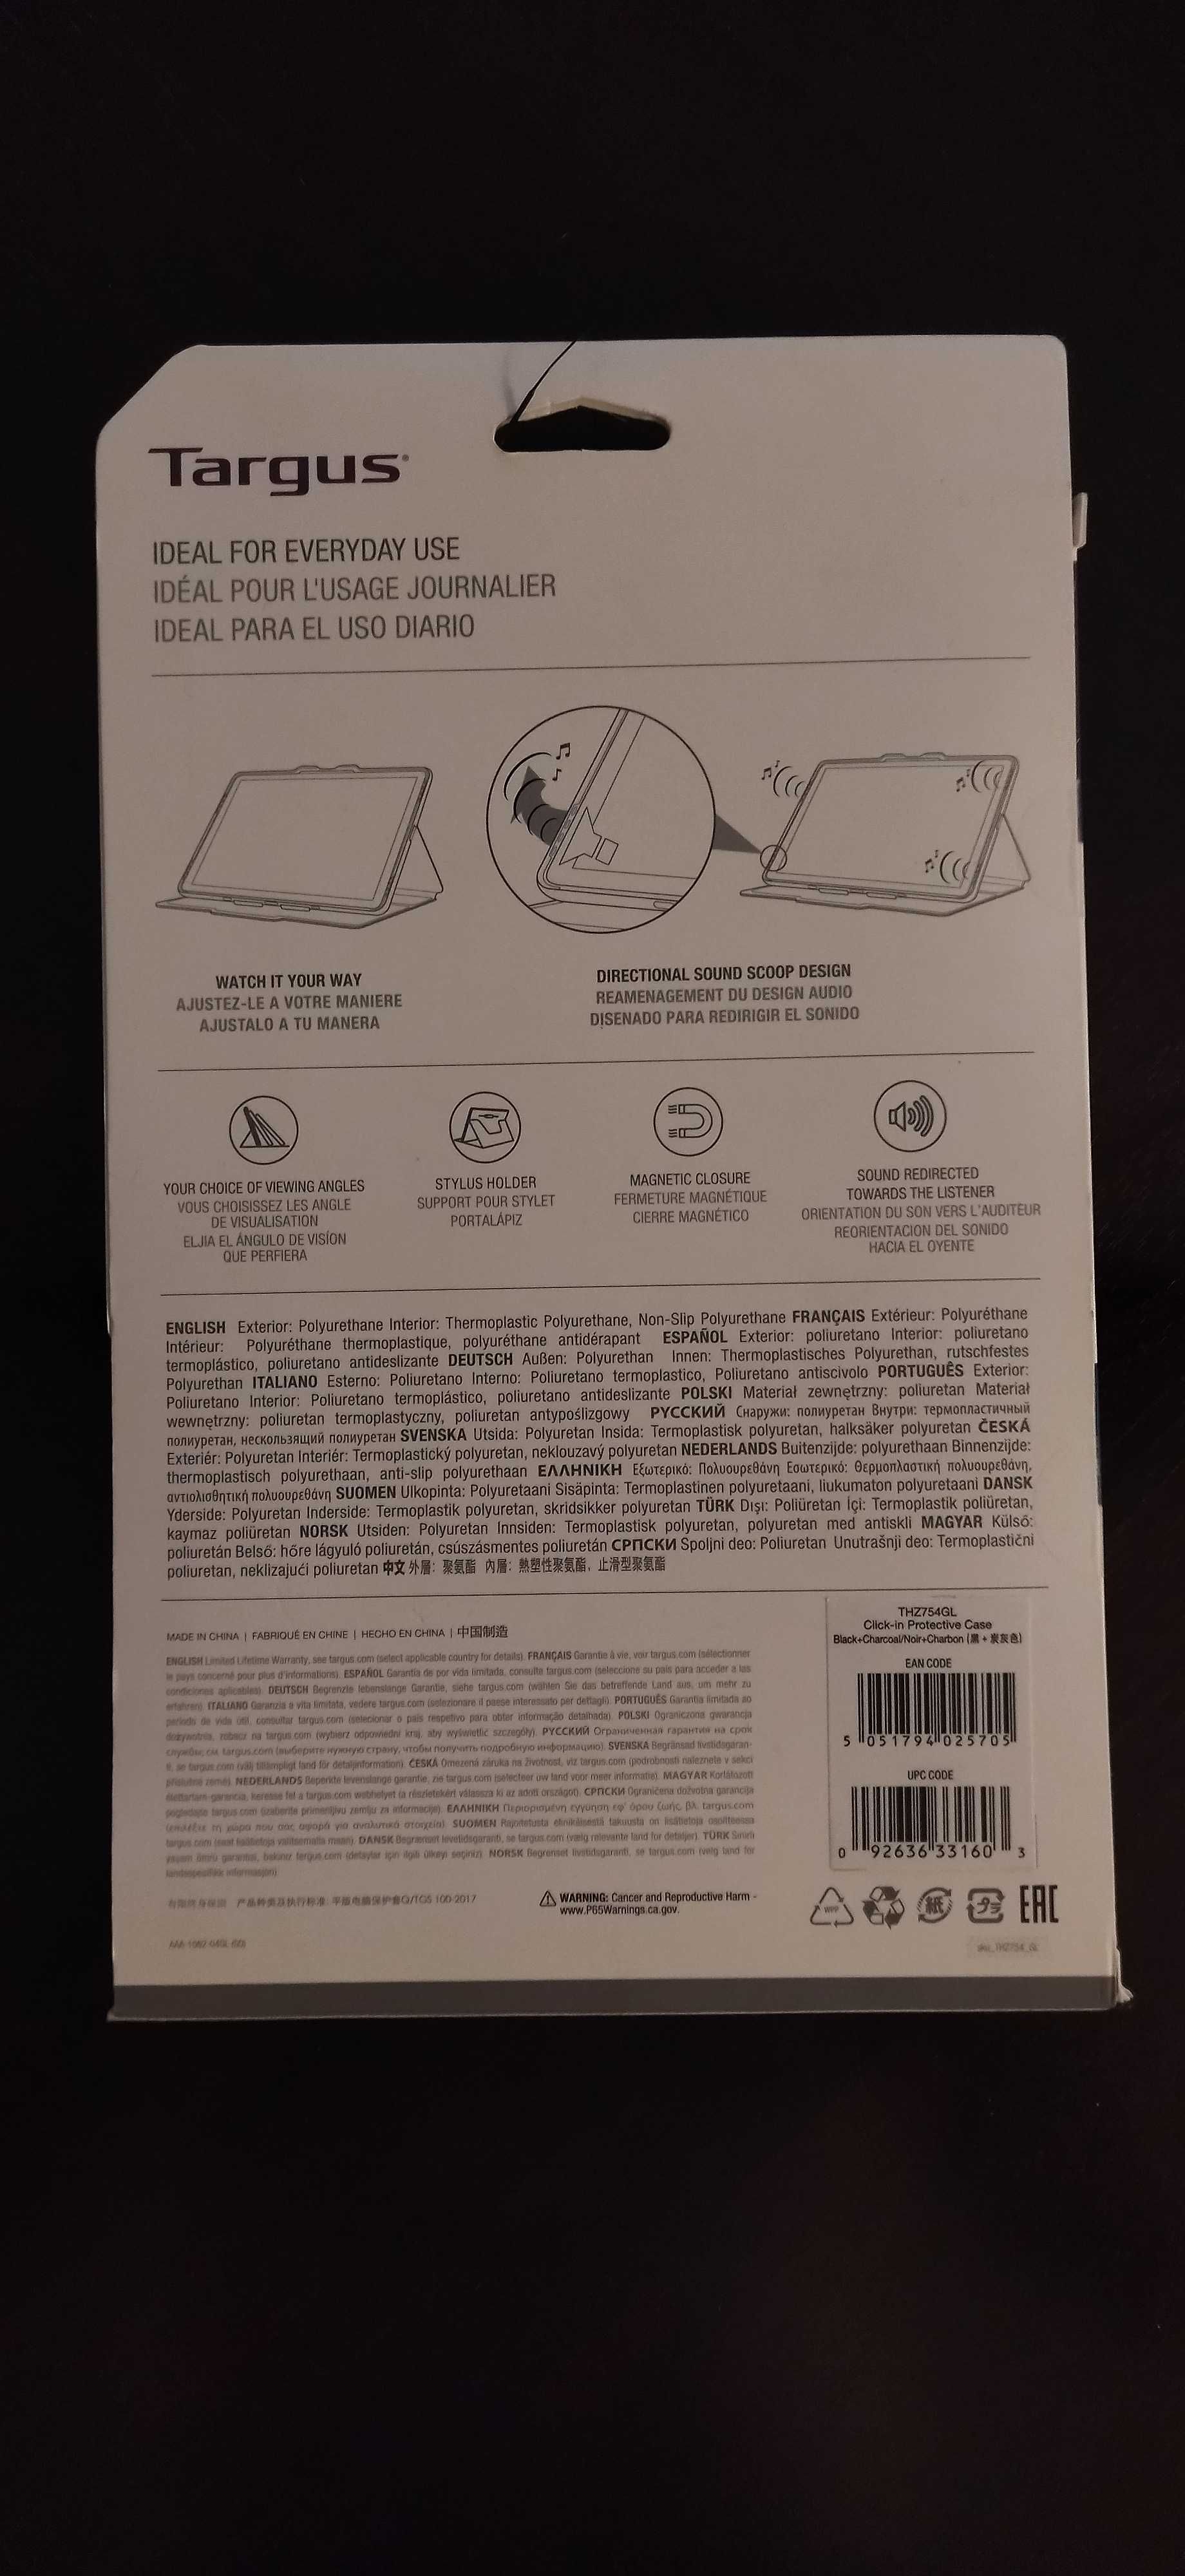 Capa de Proteção para Samsung Galaxy Tab A